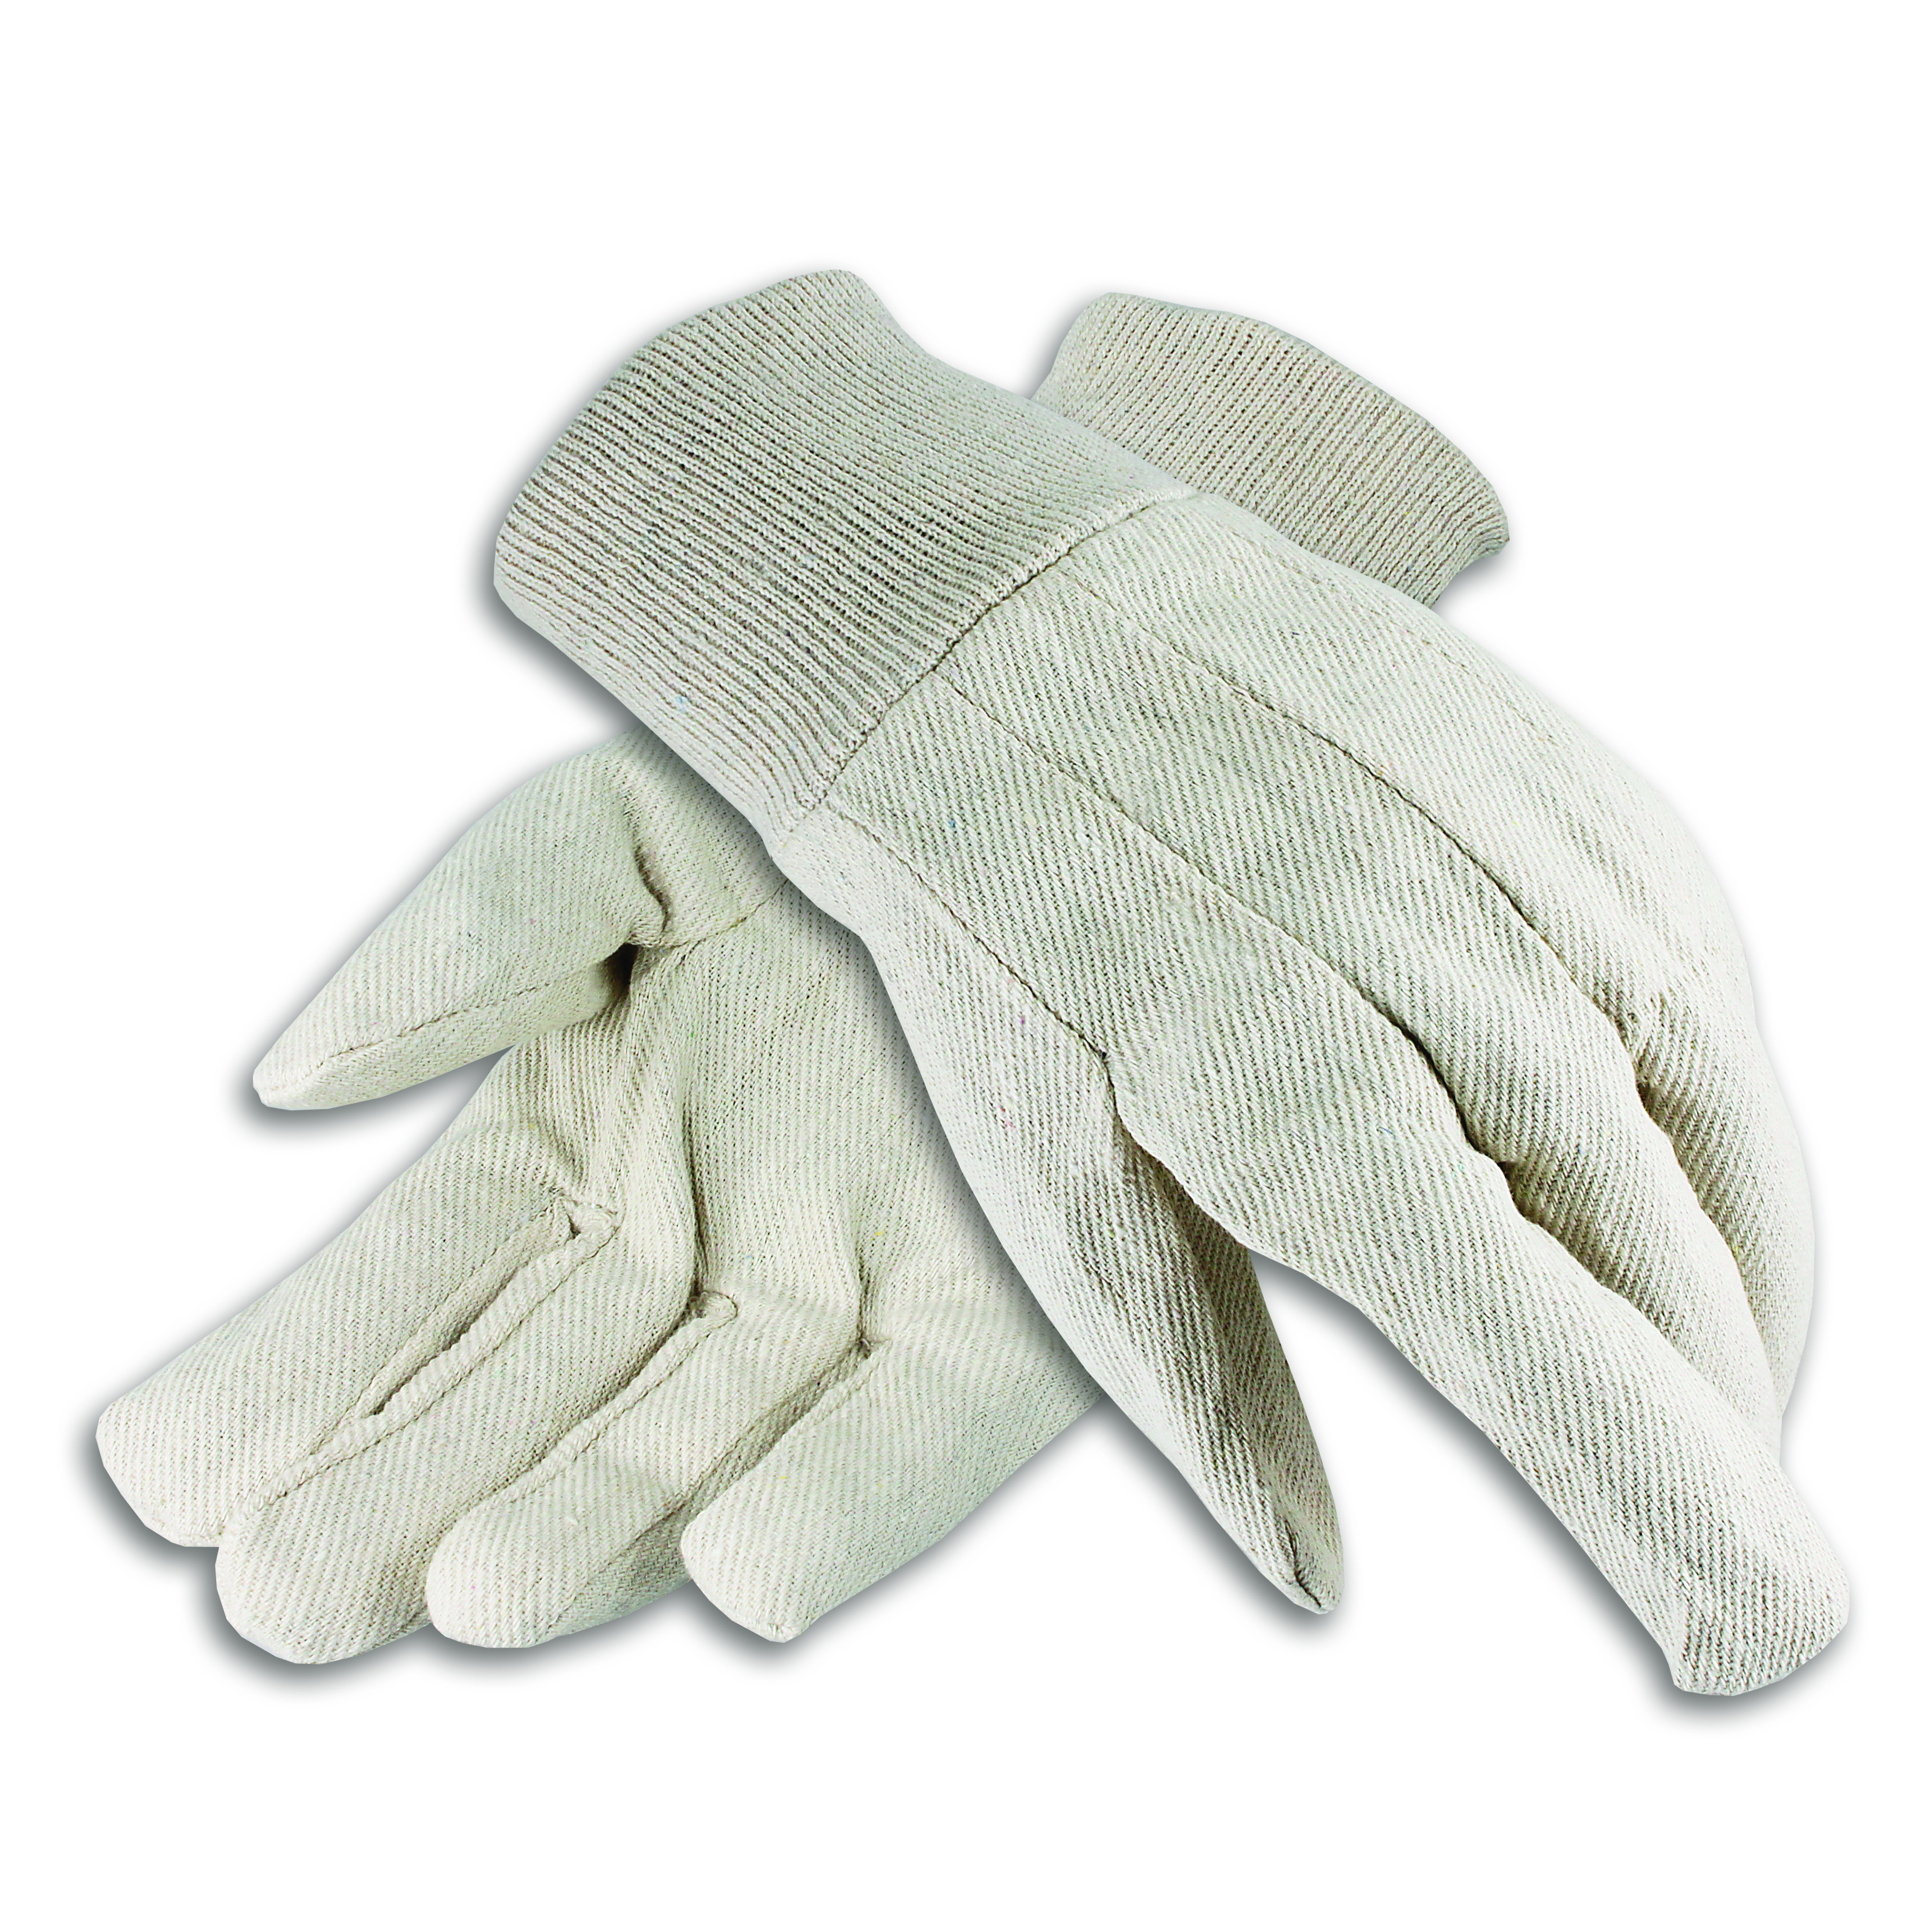 Cotton Canvas Gloves, Men's 7 oz. Knit Wrist